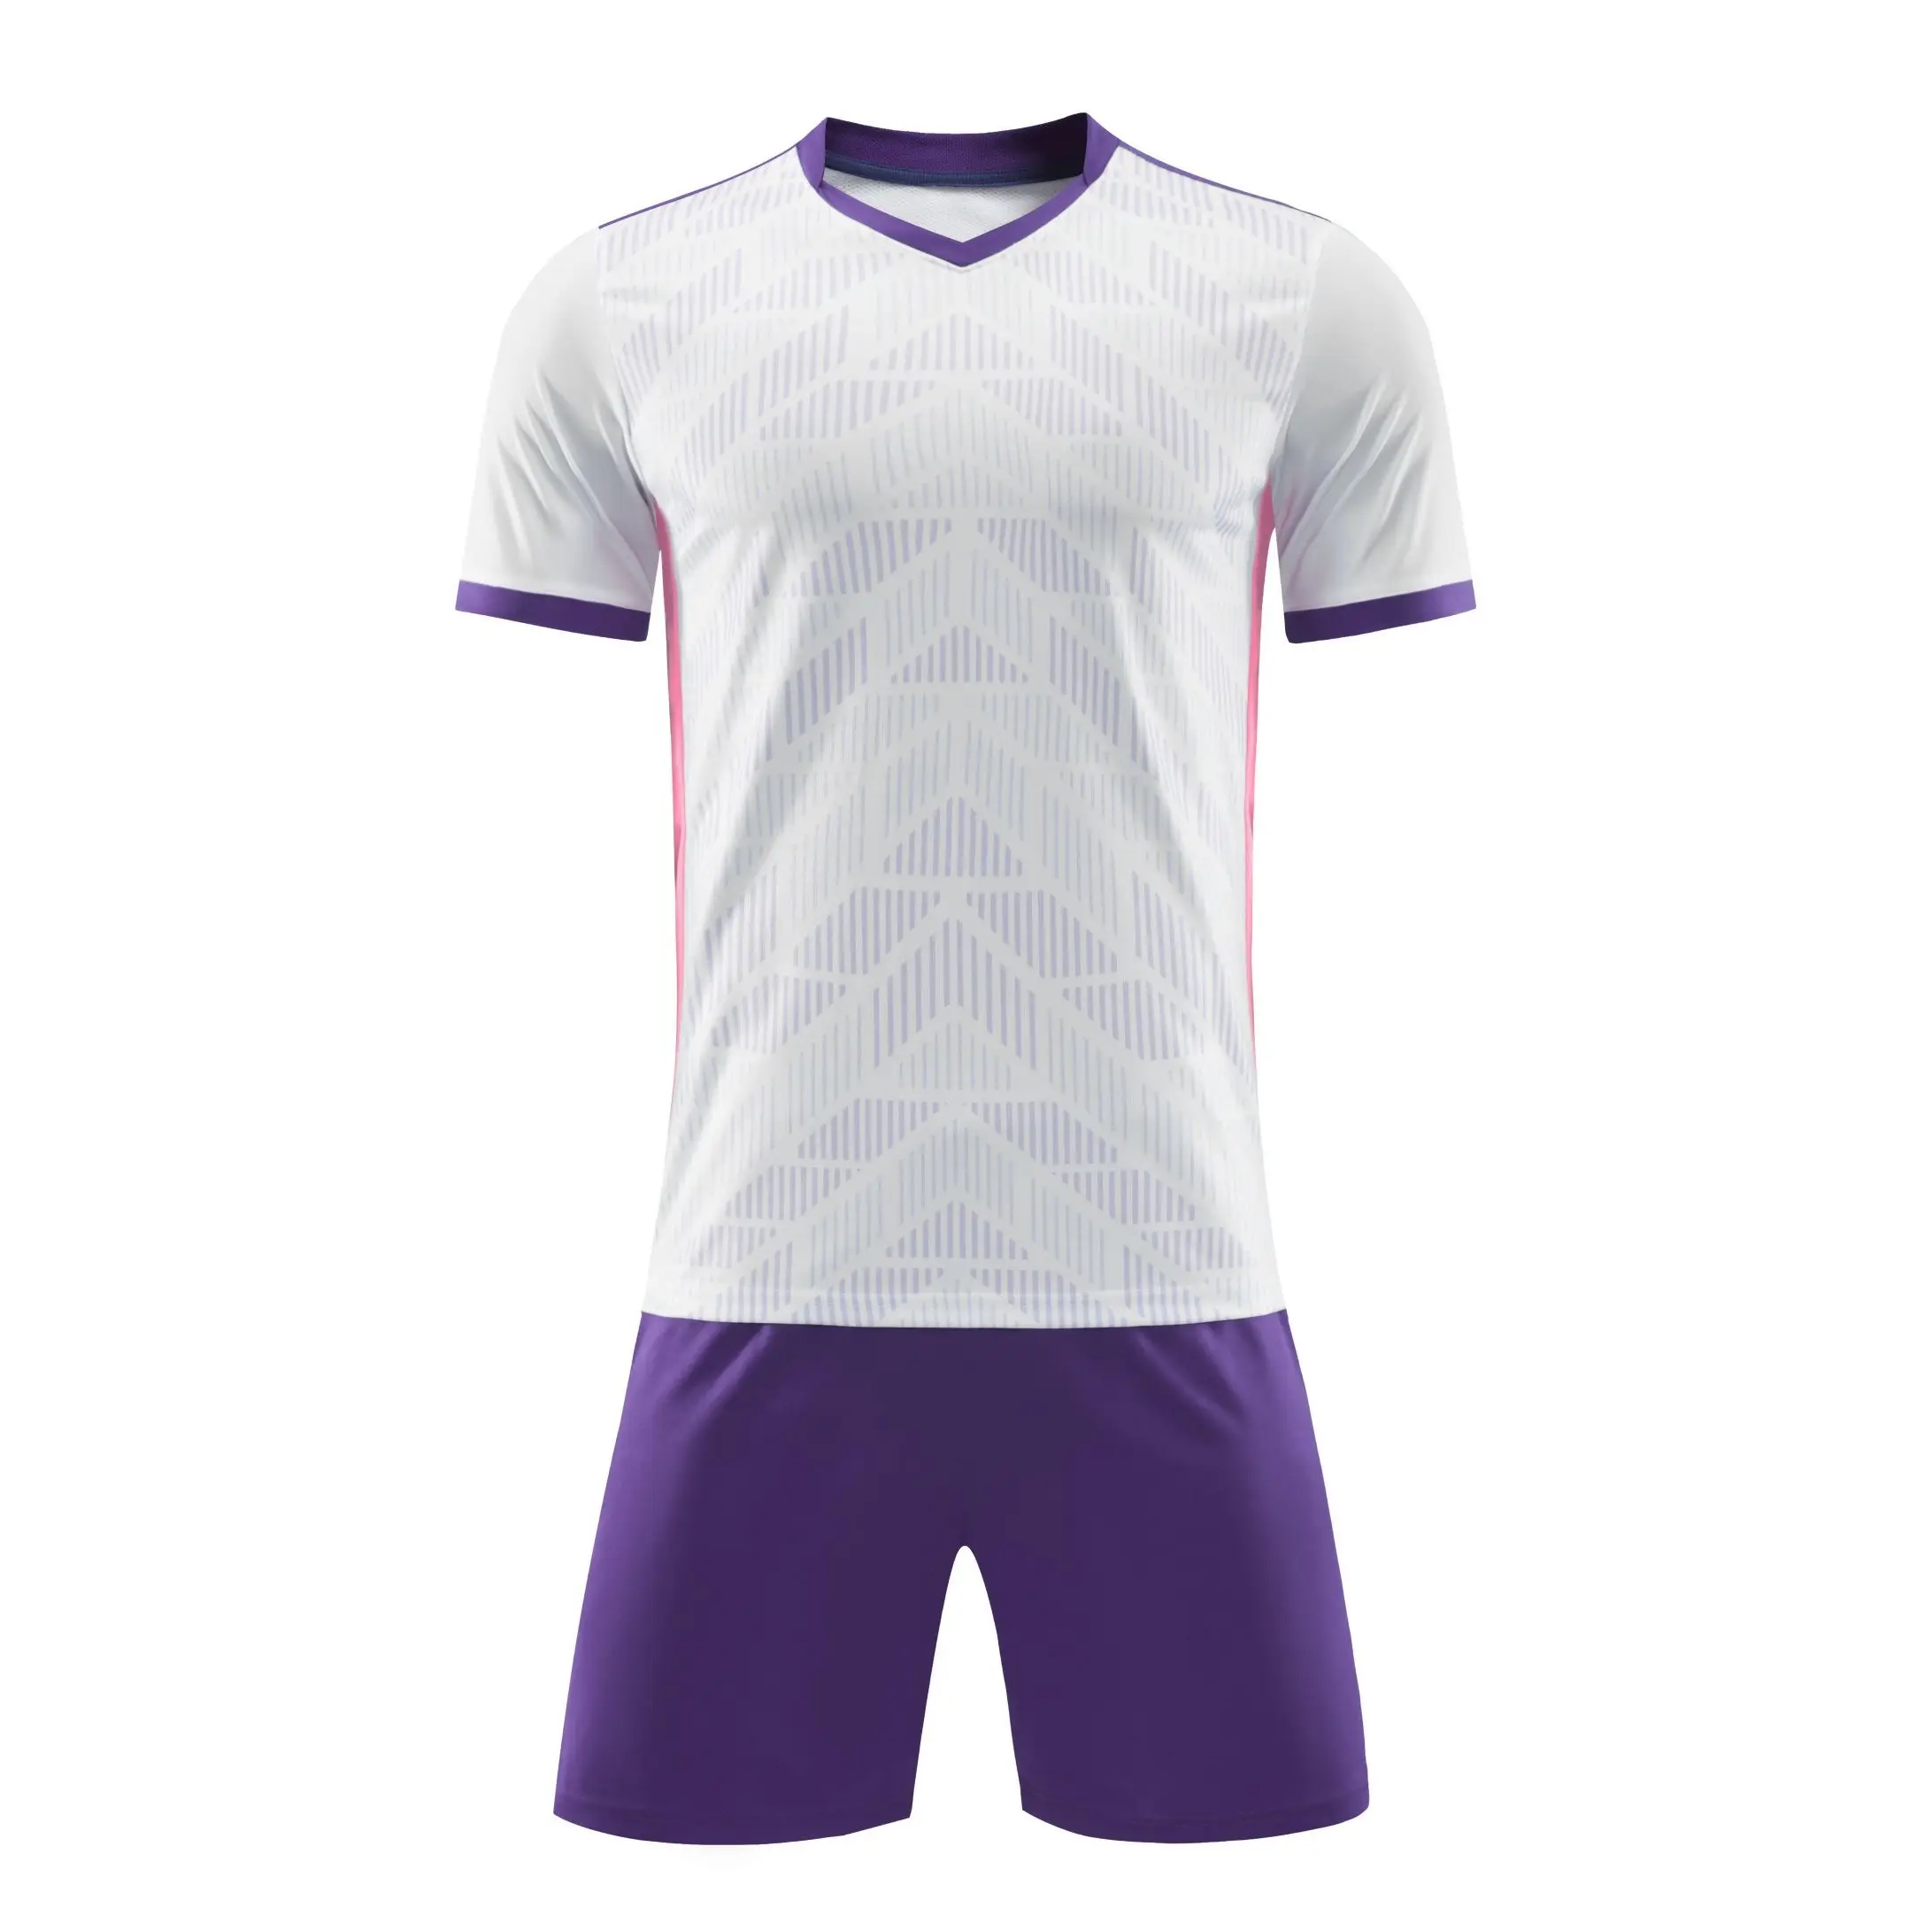 Venta al por mayor jersey de fútbol en blanco sublimado uniformes de fútbol baratos personalizados ropa de entrenamiento jersey de fútbol en blanco barato para equipos